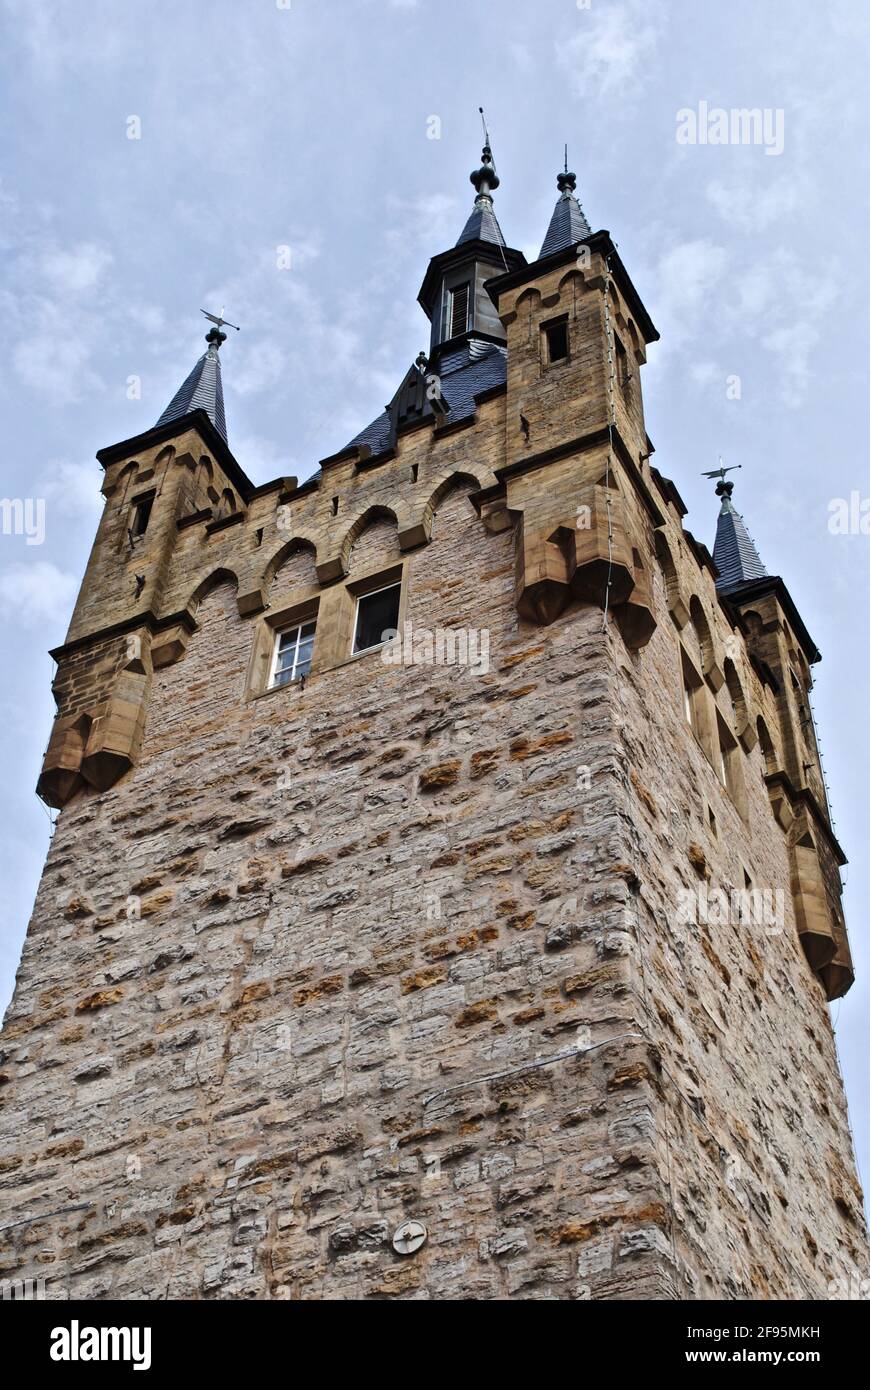 Der Blaue Turm in Bad Wimpfen im Landkreis Heilbronn in Baden-Württemberg. Das wichtigste visuelle Wahrzeichen der Stadt. Stockfoto